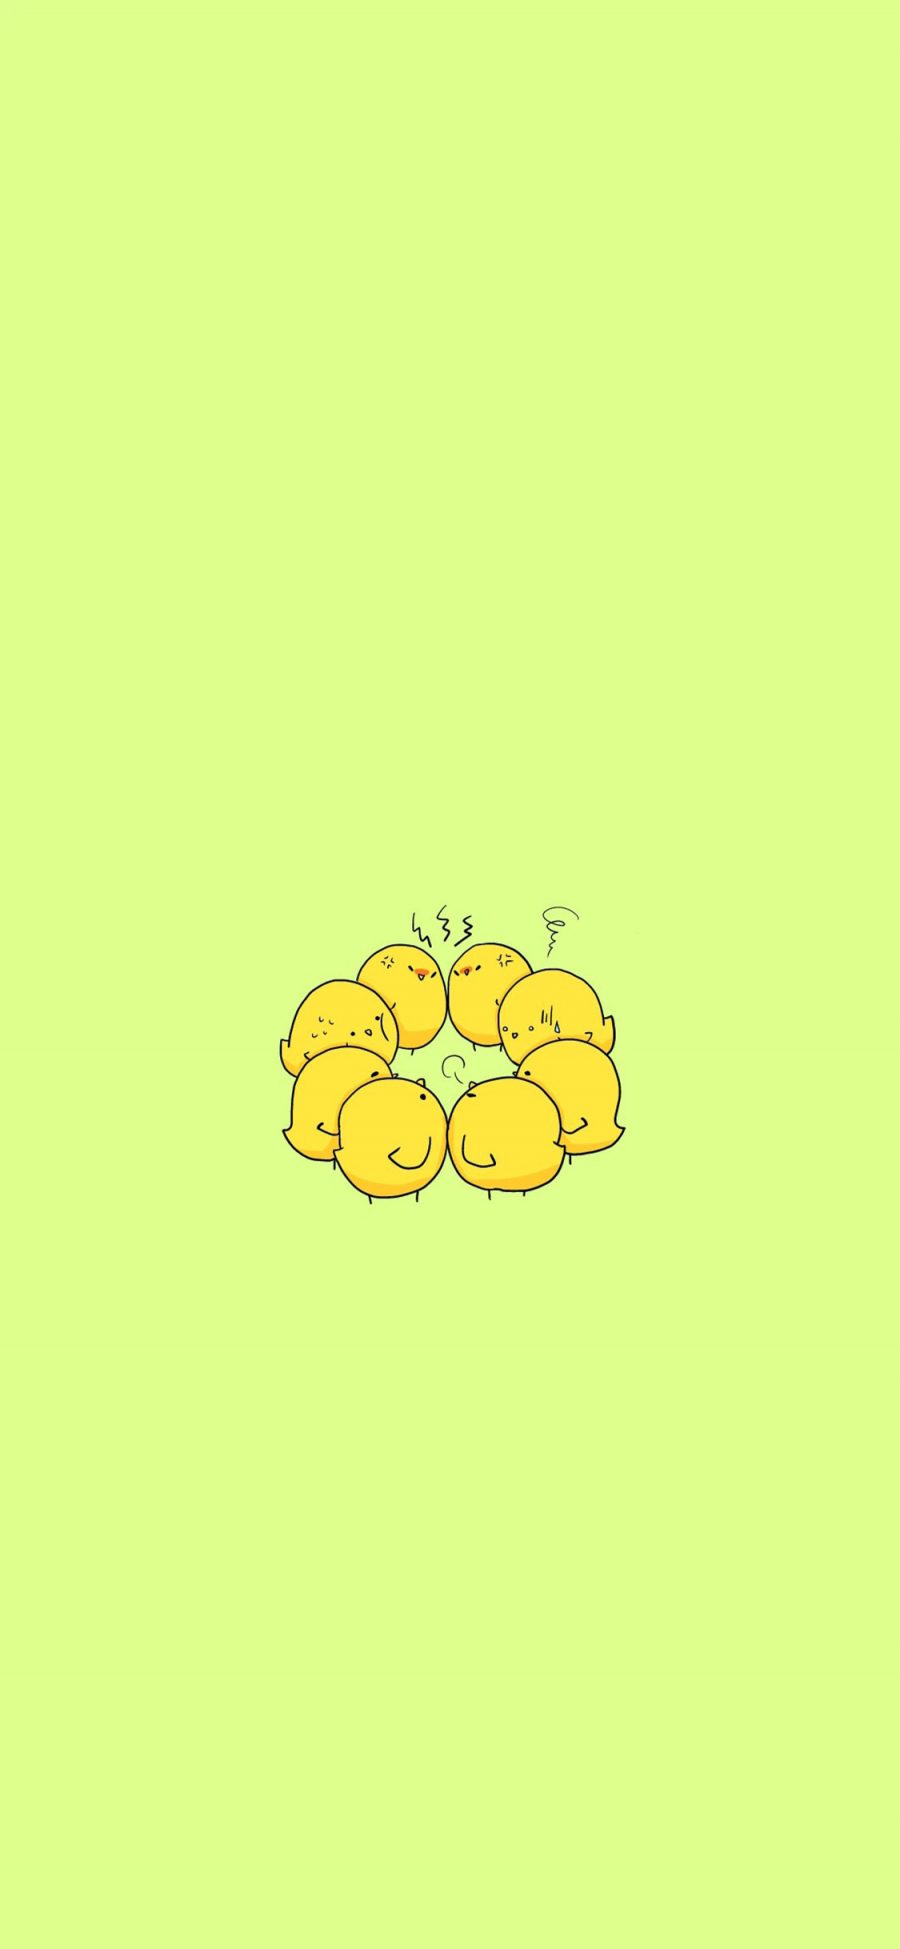 [2436×1125]小黄鸡 卡通 手绘 黄 简约 苹果手机动漫壁纸图片